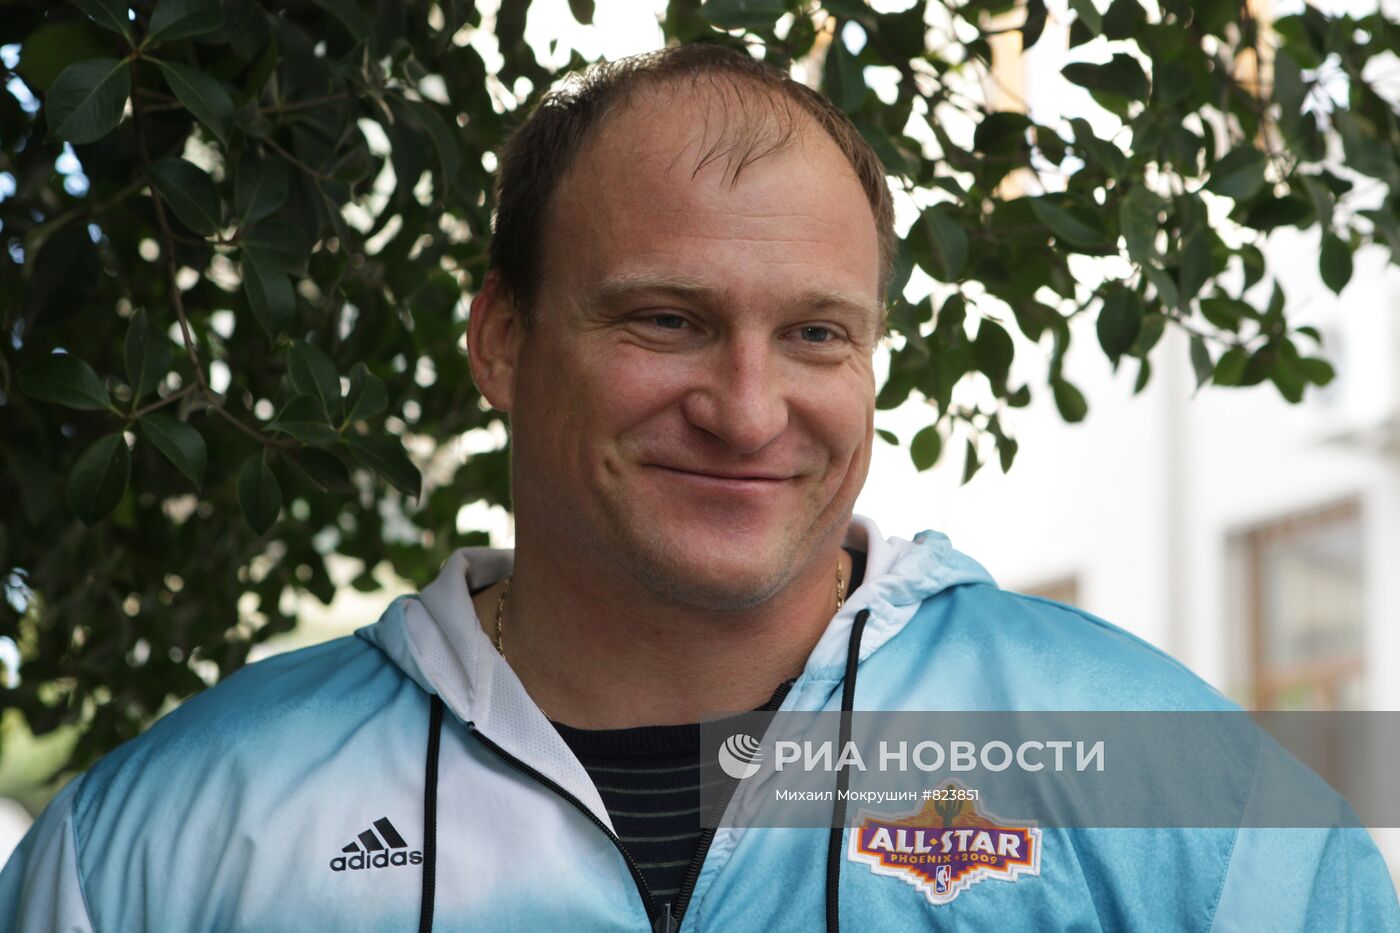 Чемпион Паралимпийских игр Алексей Ашапатов